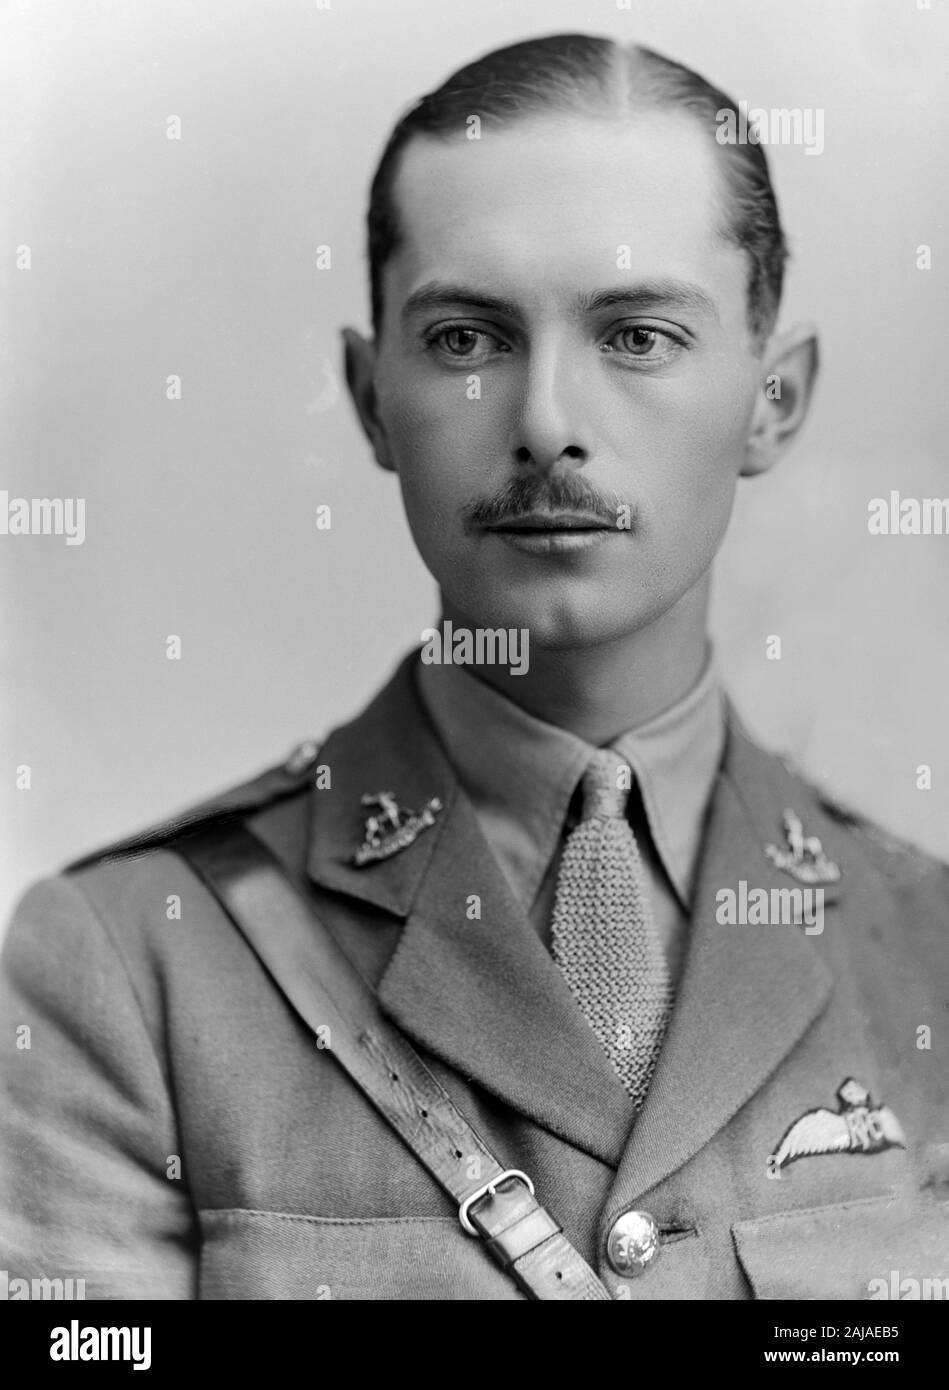 Ein vintage Schwarz-Weiß-Porträt Foto von Kapitän G.R.Taylor des Royal Flying Corps, die zuvor der Bedfordshire Regiment, das am 5. Juni 1918. Foto in der berühmten Londoner Studios von Alexander Bassano getroffen. Stockfoto